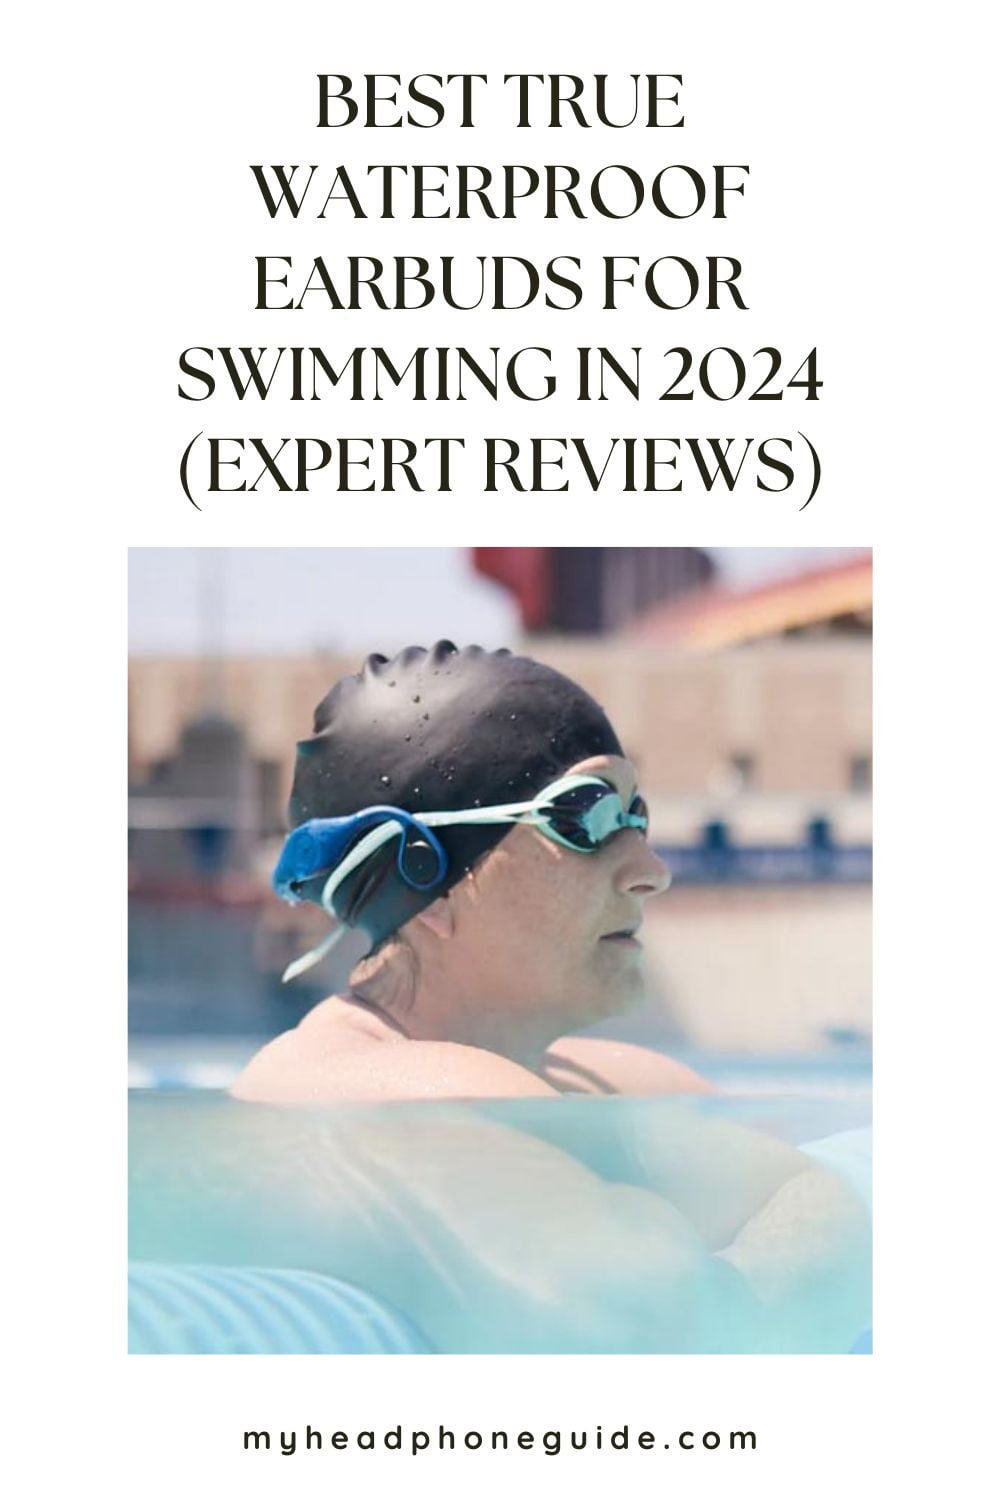 Best True Waterproof Earbuds for Swimming in 2024